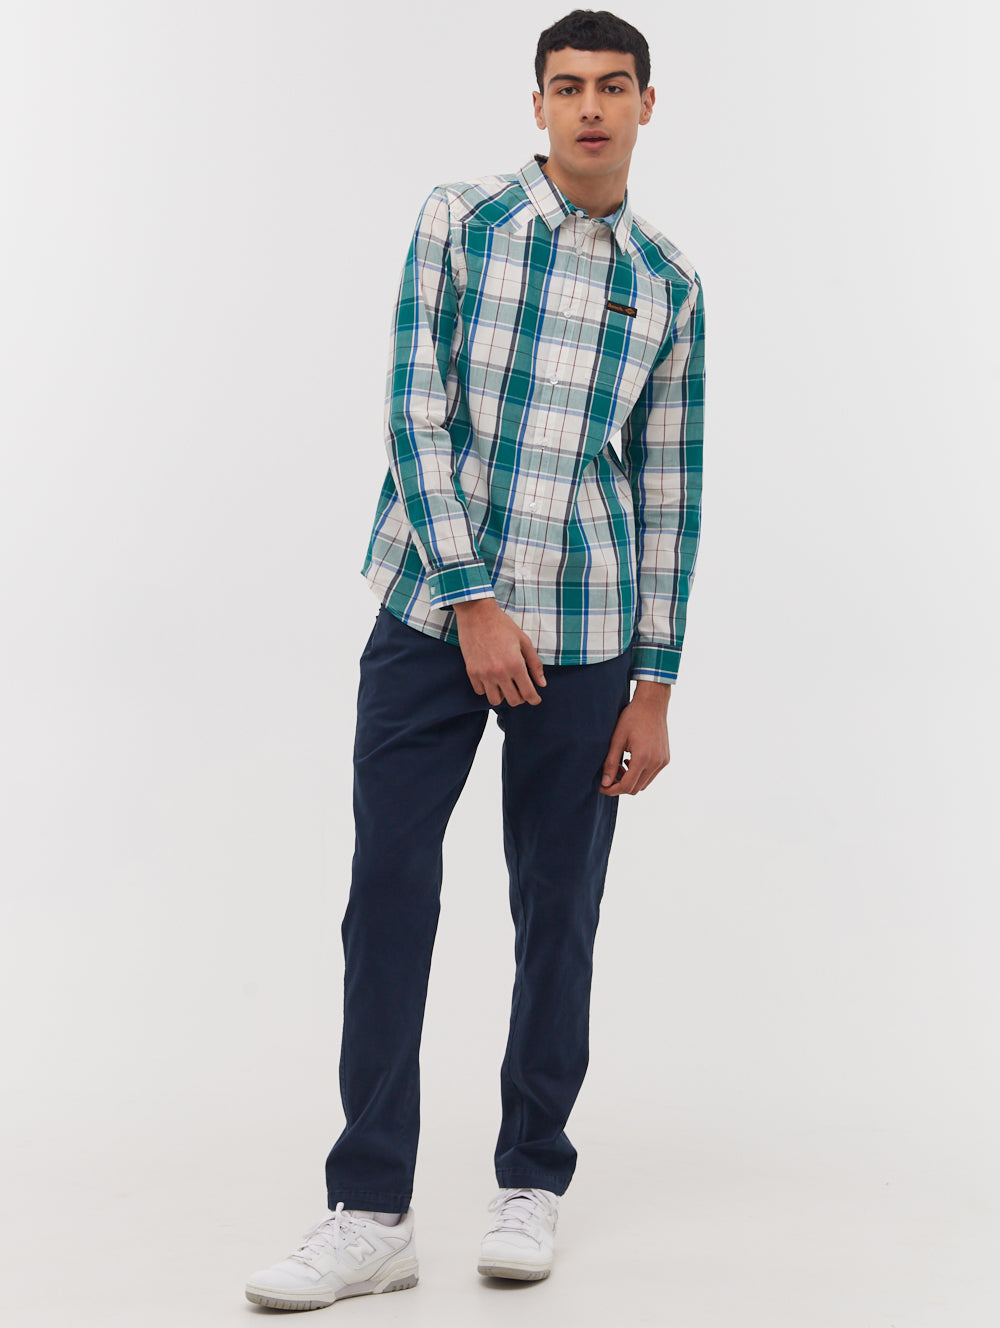 Tycho Long Sleeve Check Shirt - BN2G128604